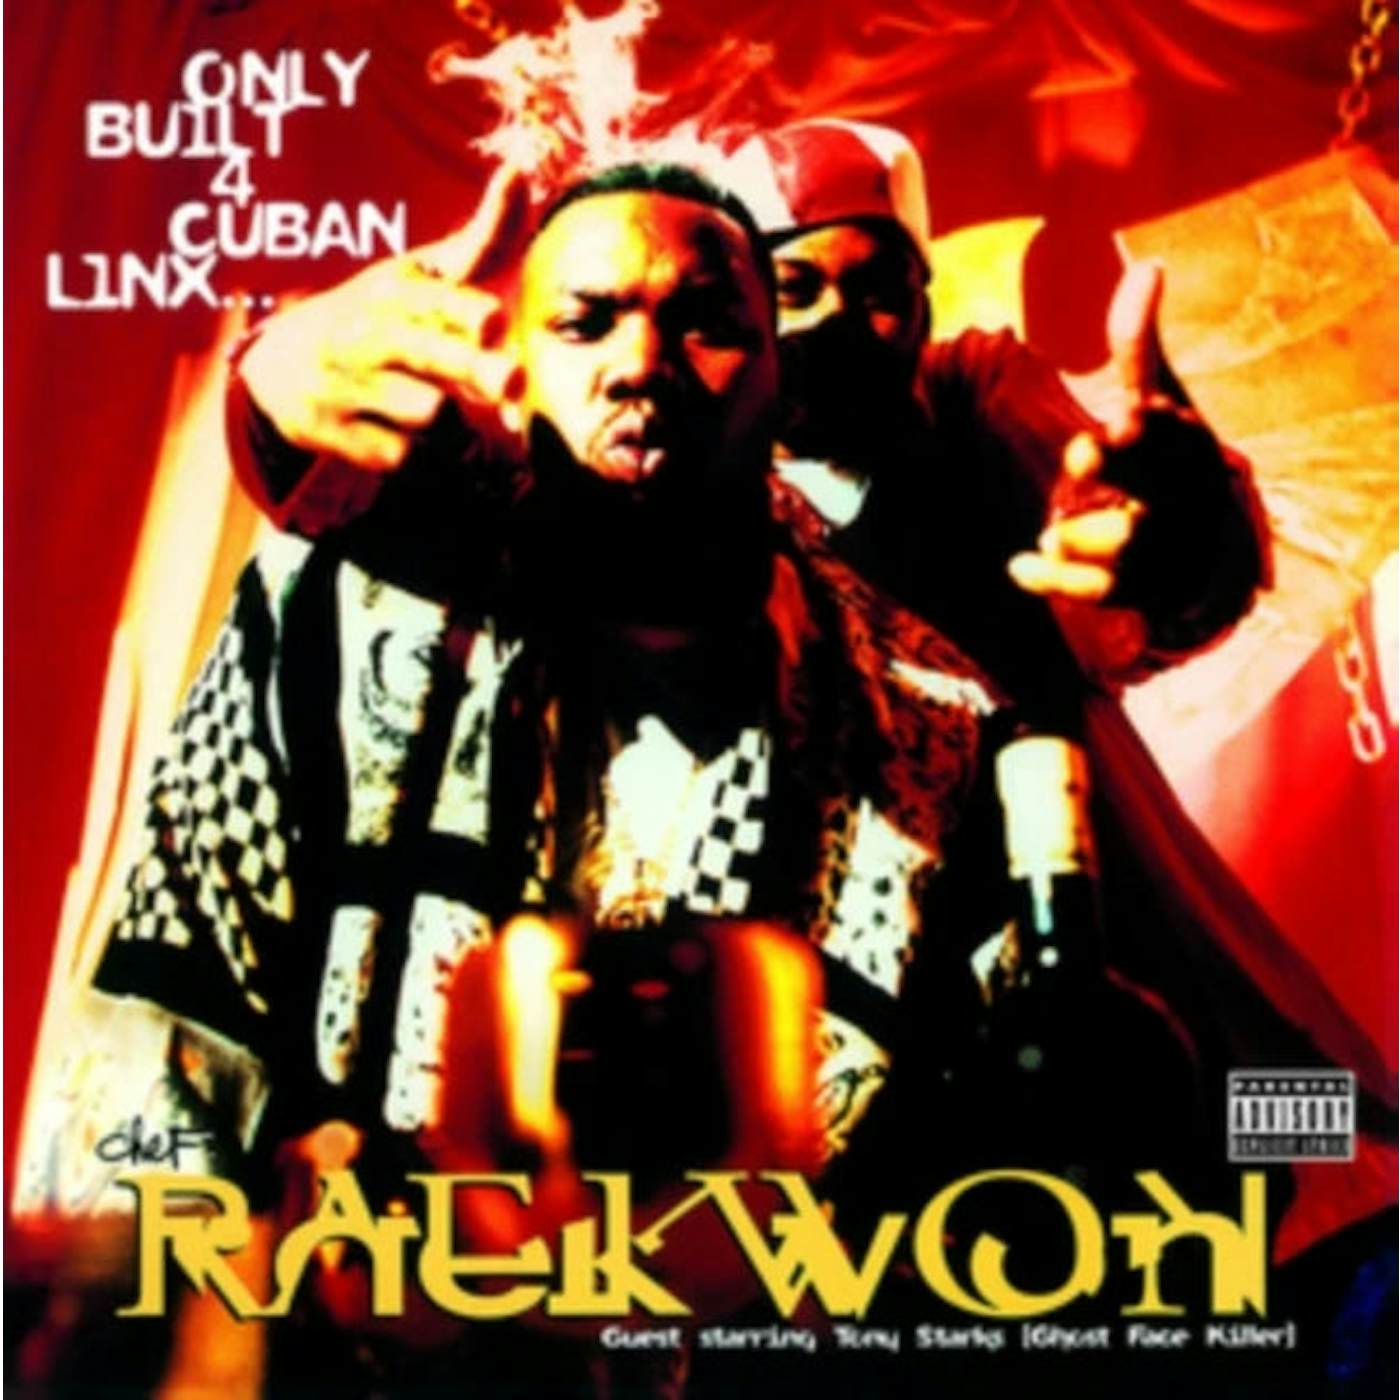 Only Built 4 Cuban Linx Vinyl Record - Raekwon